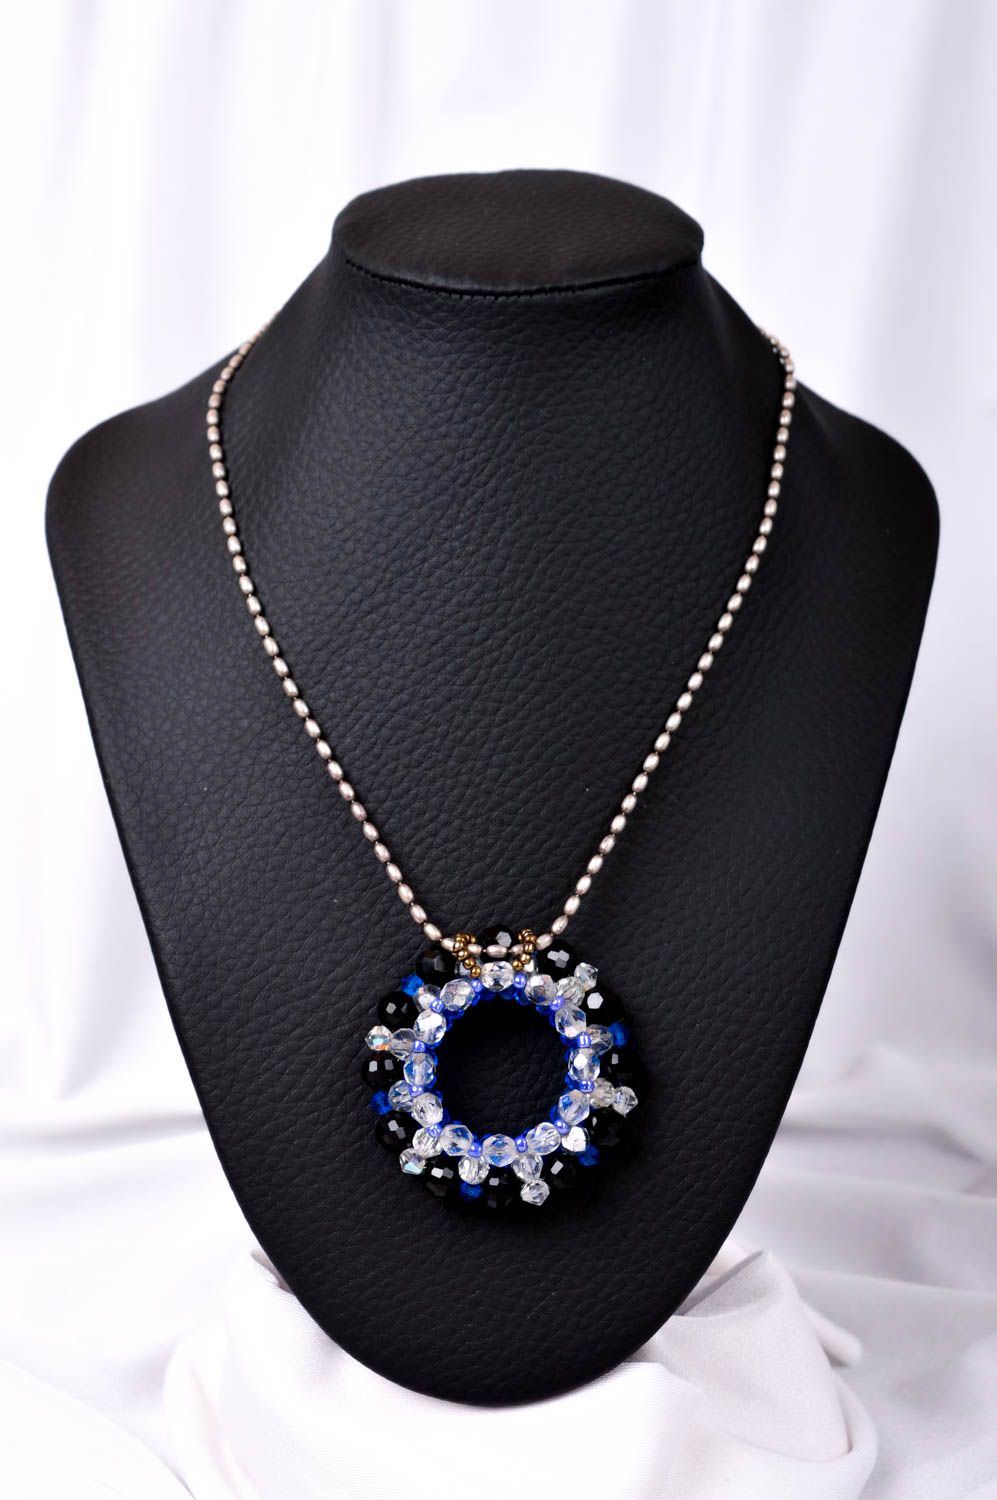 Handmade pendant designer pendant beaded pendant for women unusual gift photo 1